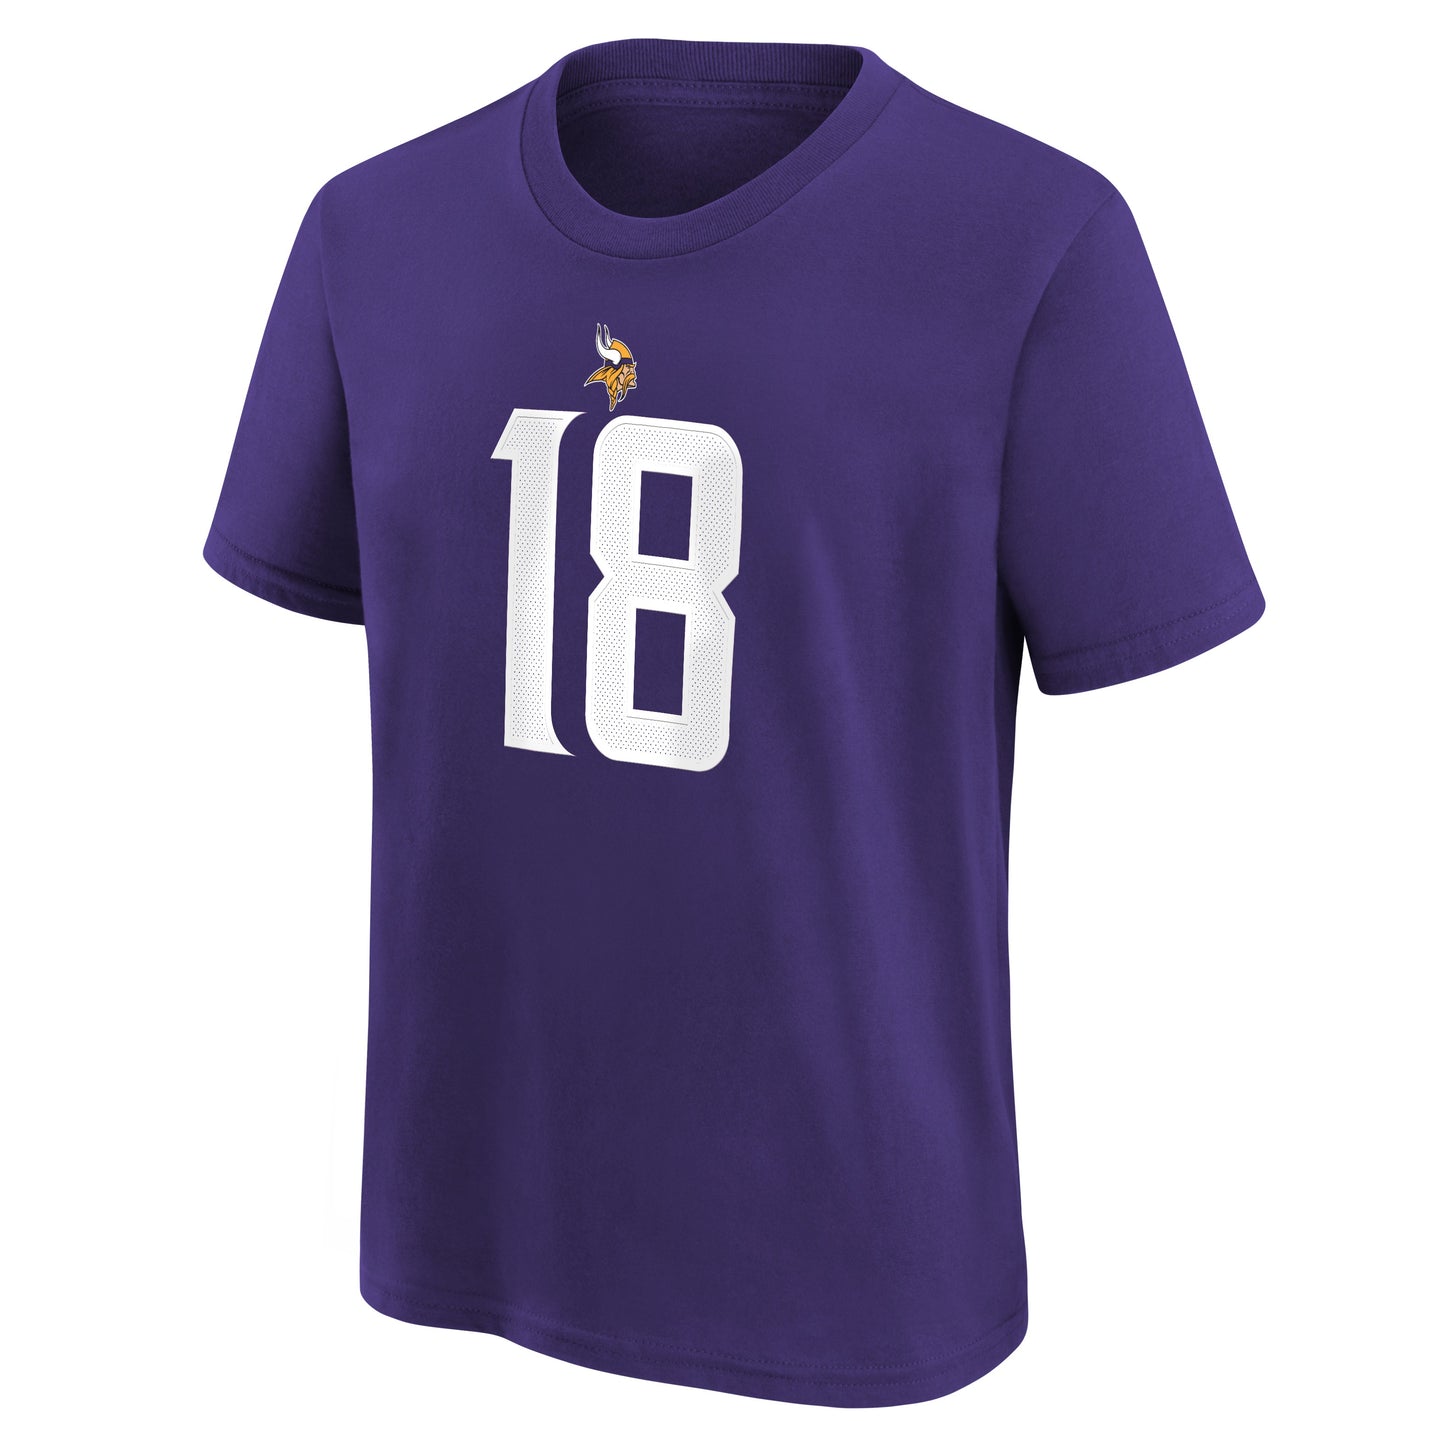 Youth Justin Jefferson Minnesota Vikings Nike Purple FUSE Name & Number T-Shirt